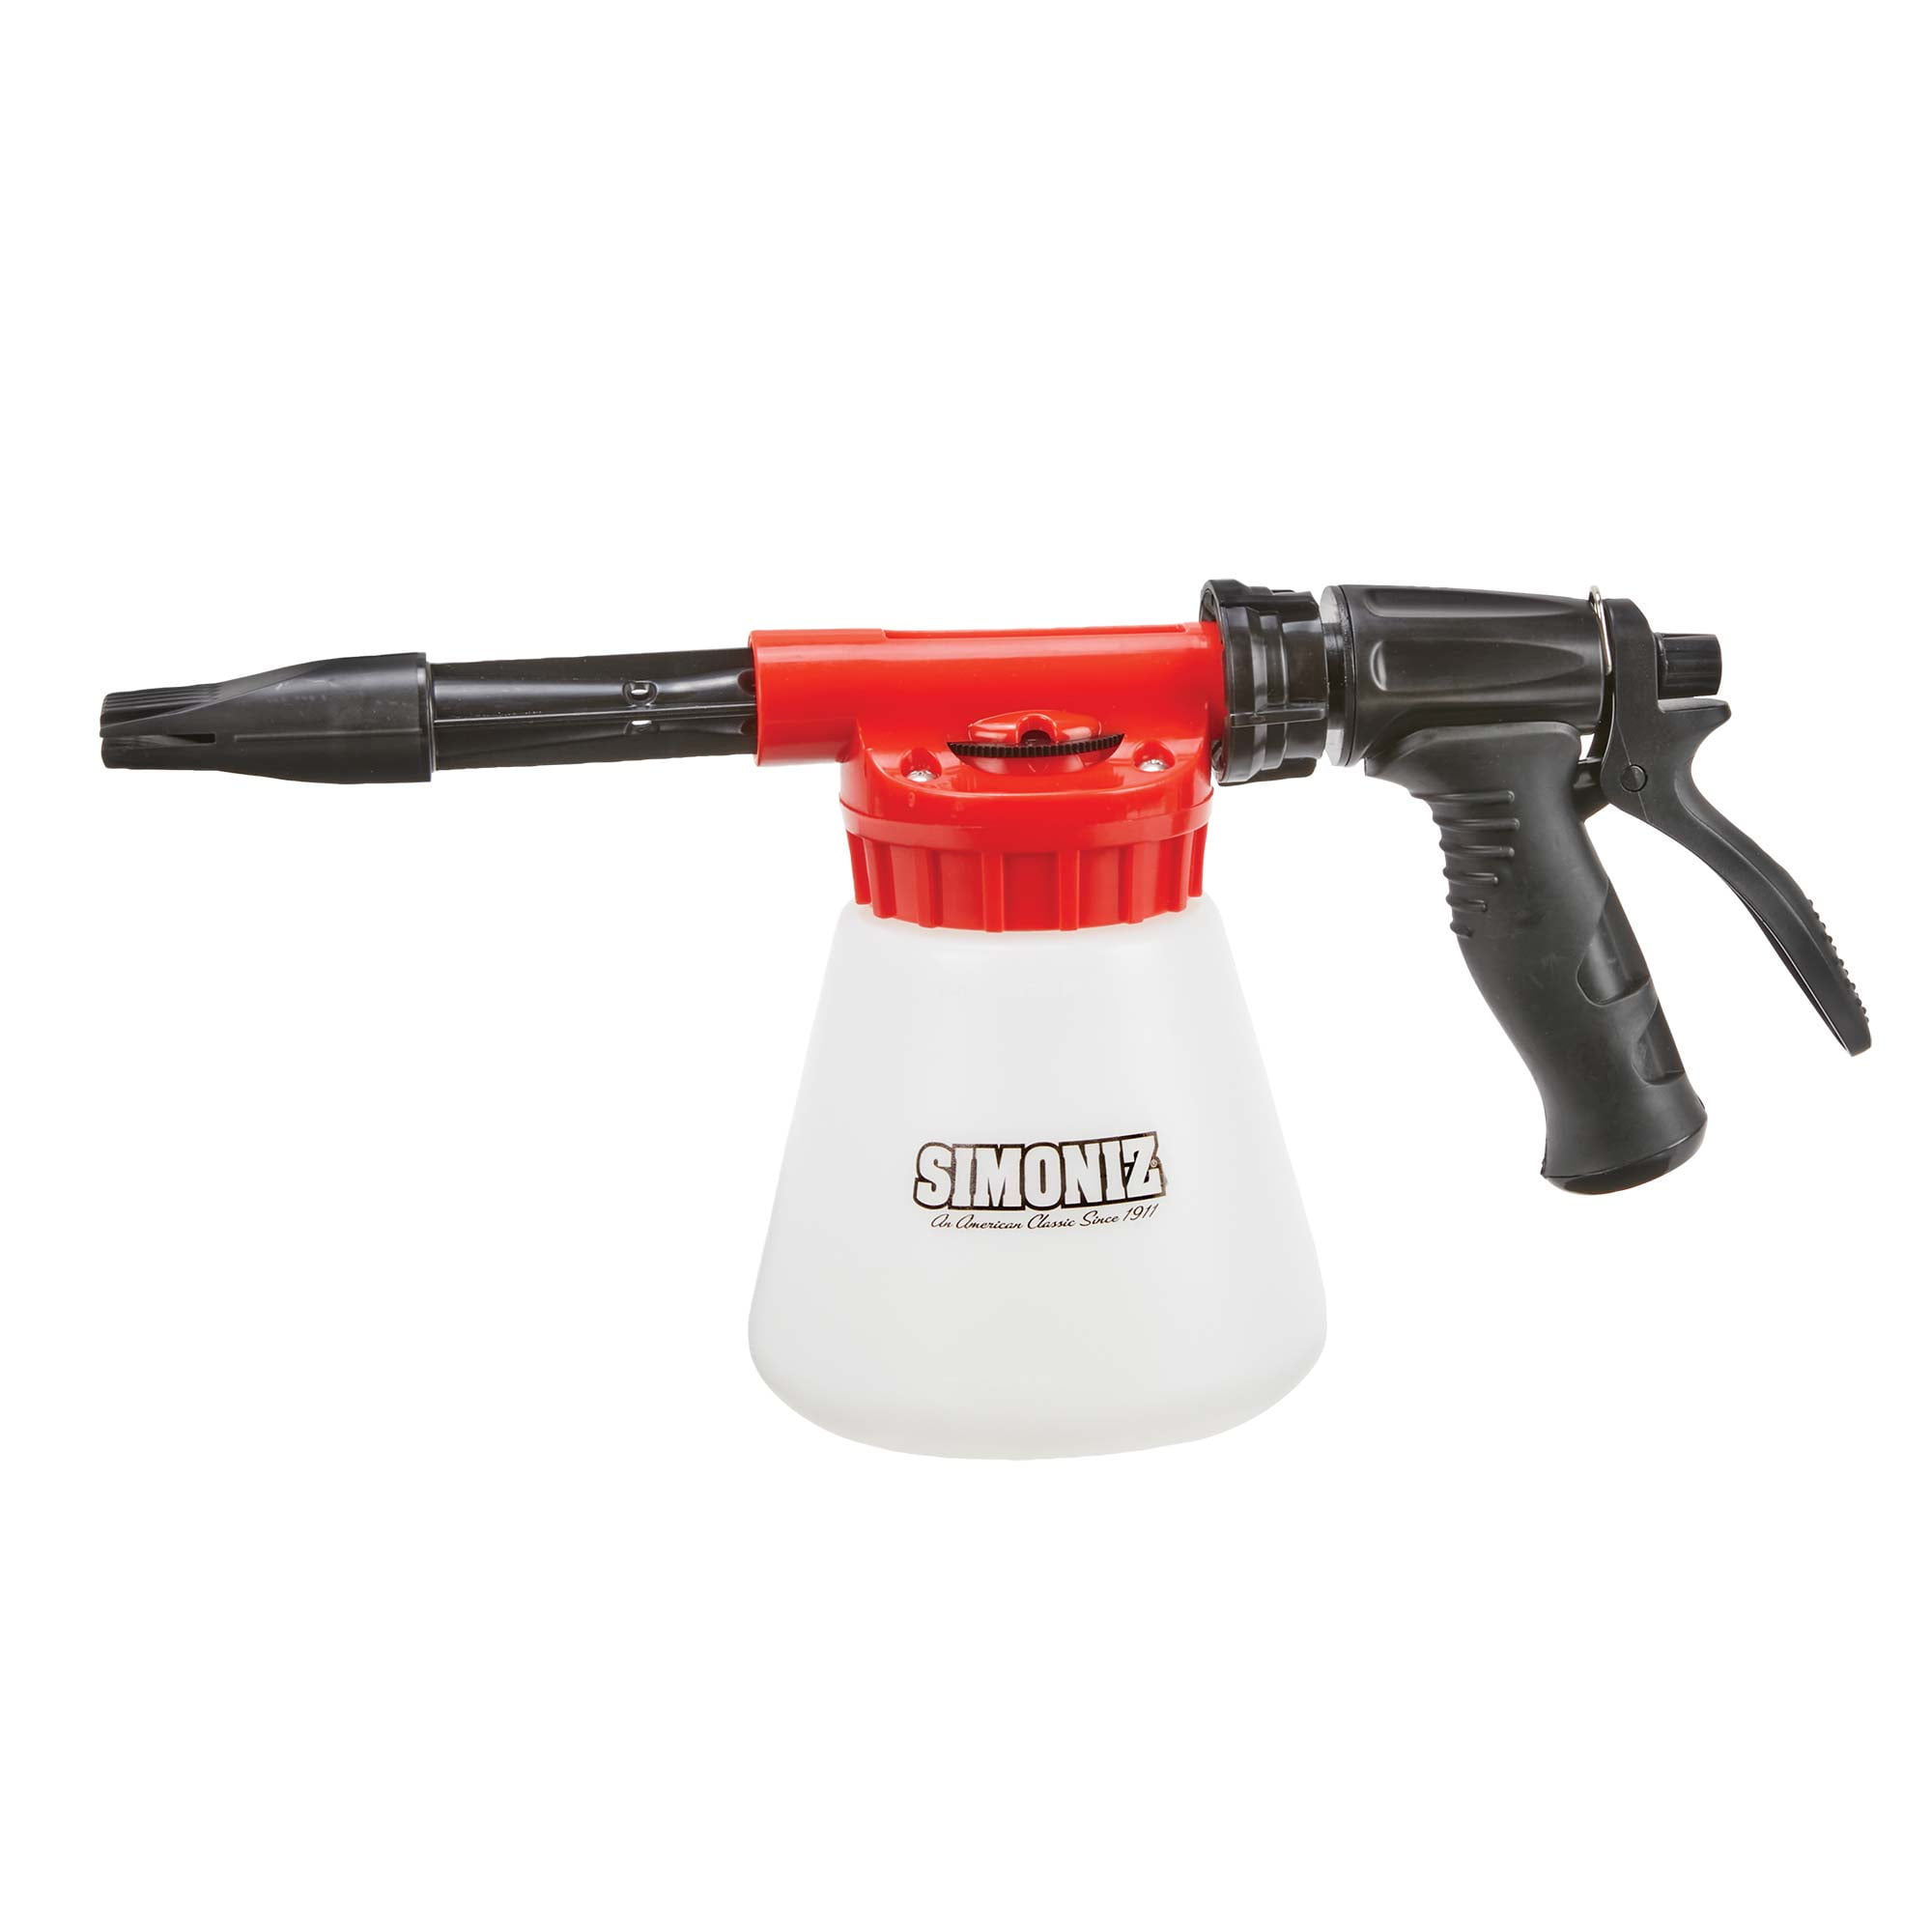 Simoniz Adjustable Foam Sprayer